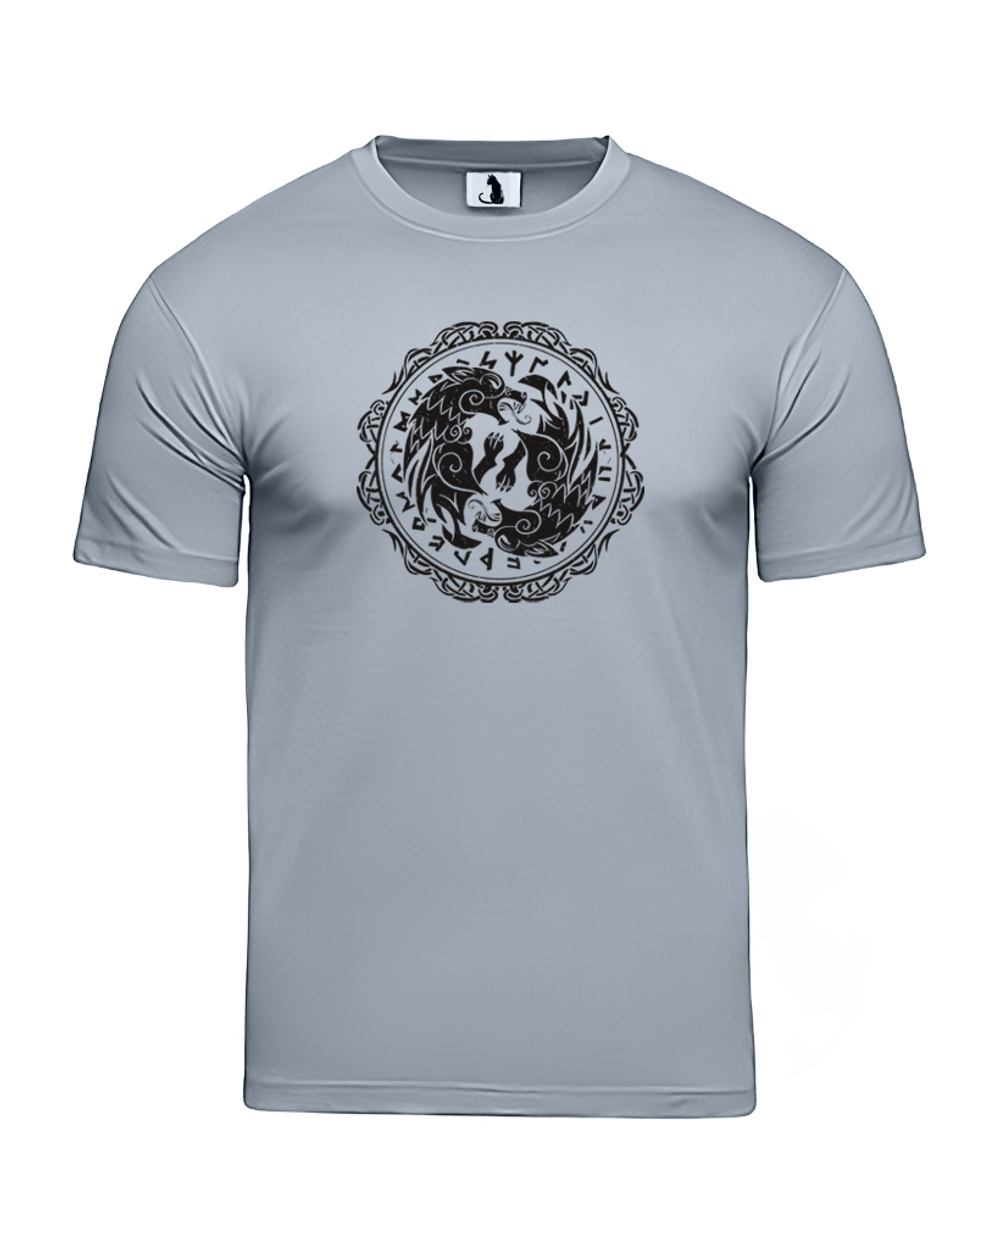 Скандинавская футболка с волком и рунами unisex серая с черным рисунком